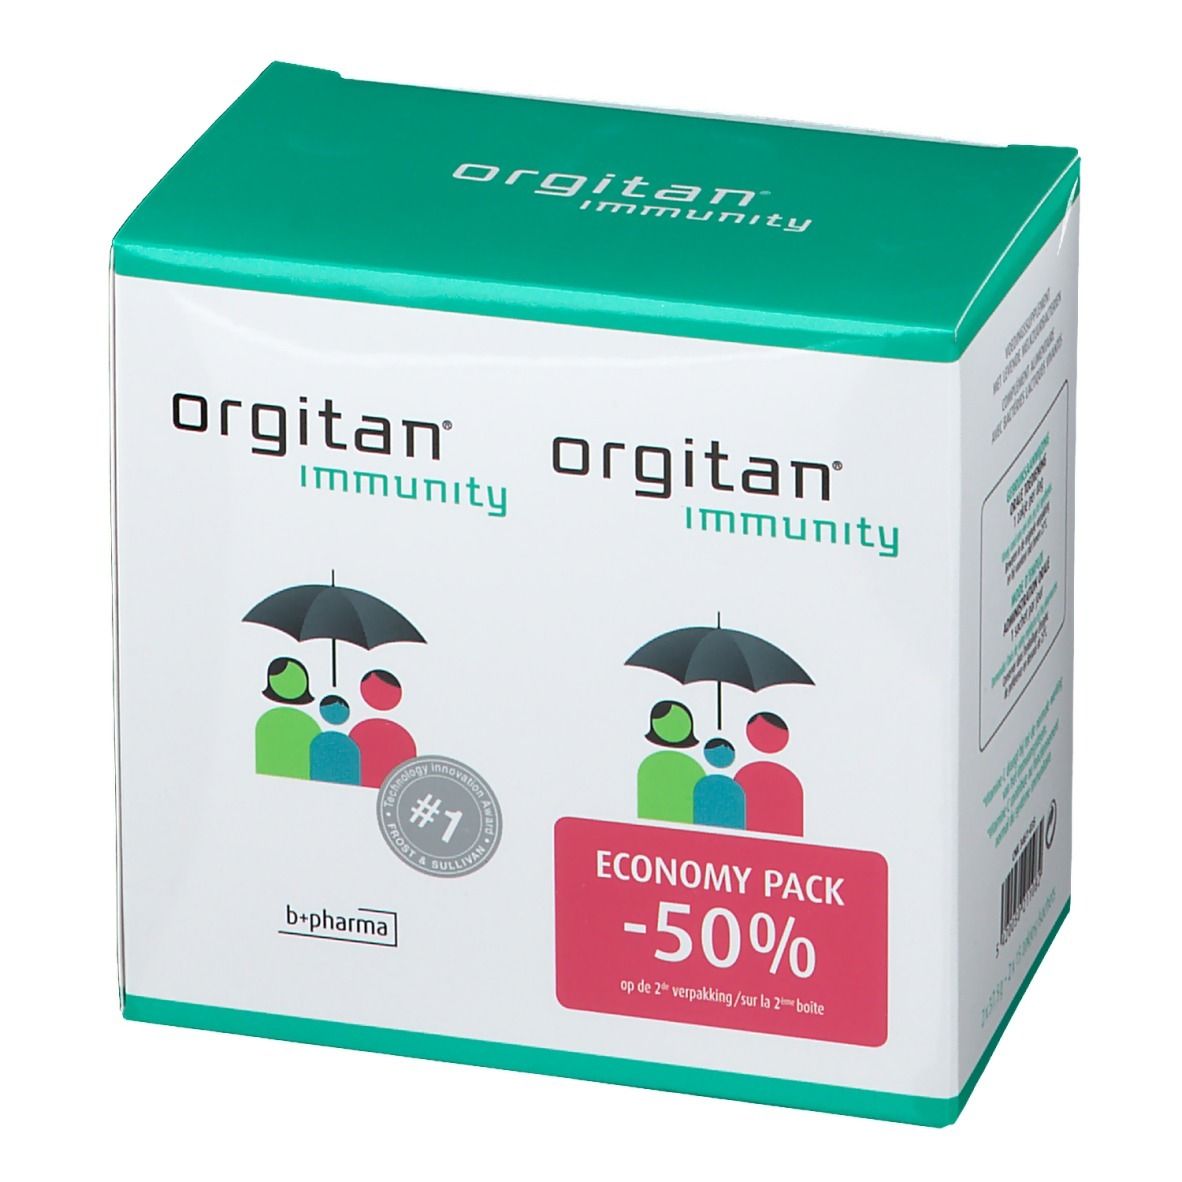 Orgitan Immunity Duopack